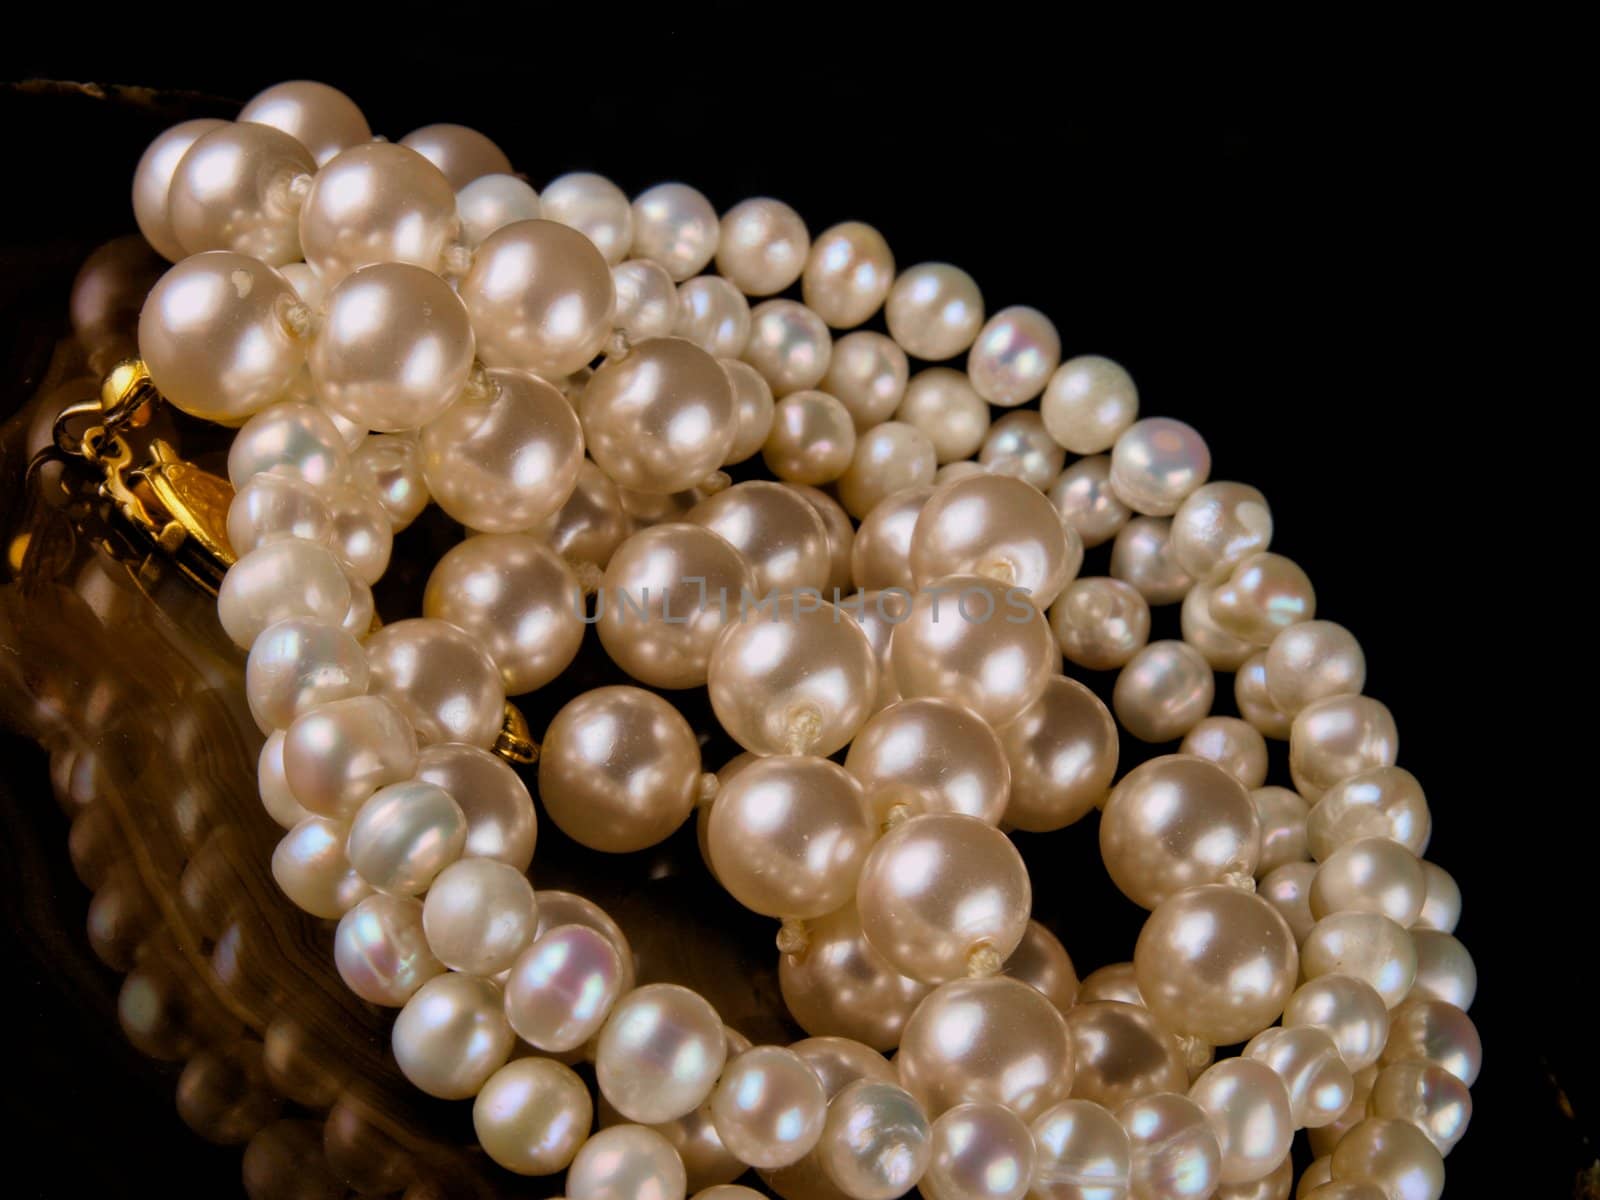 pearl bracelet close up on black background